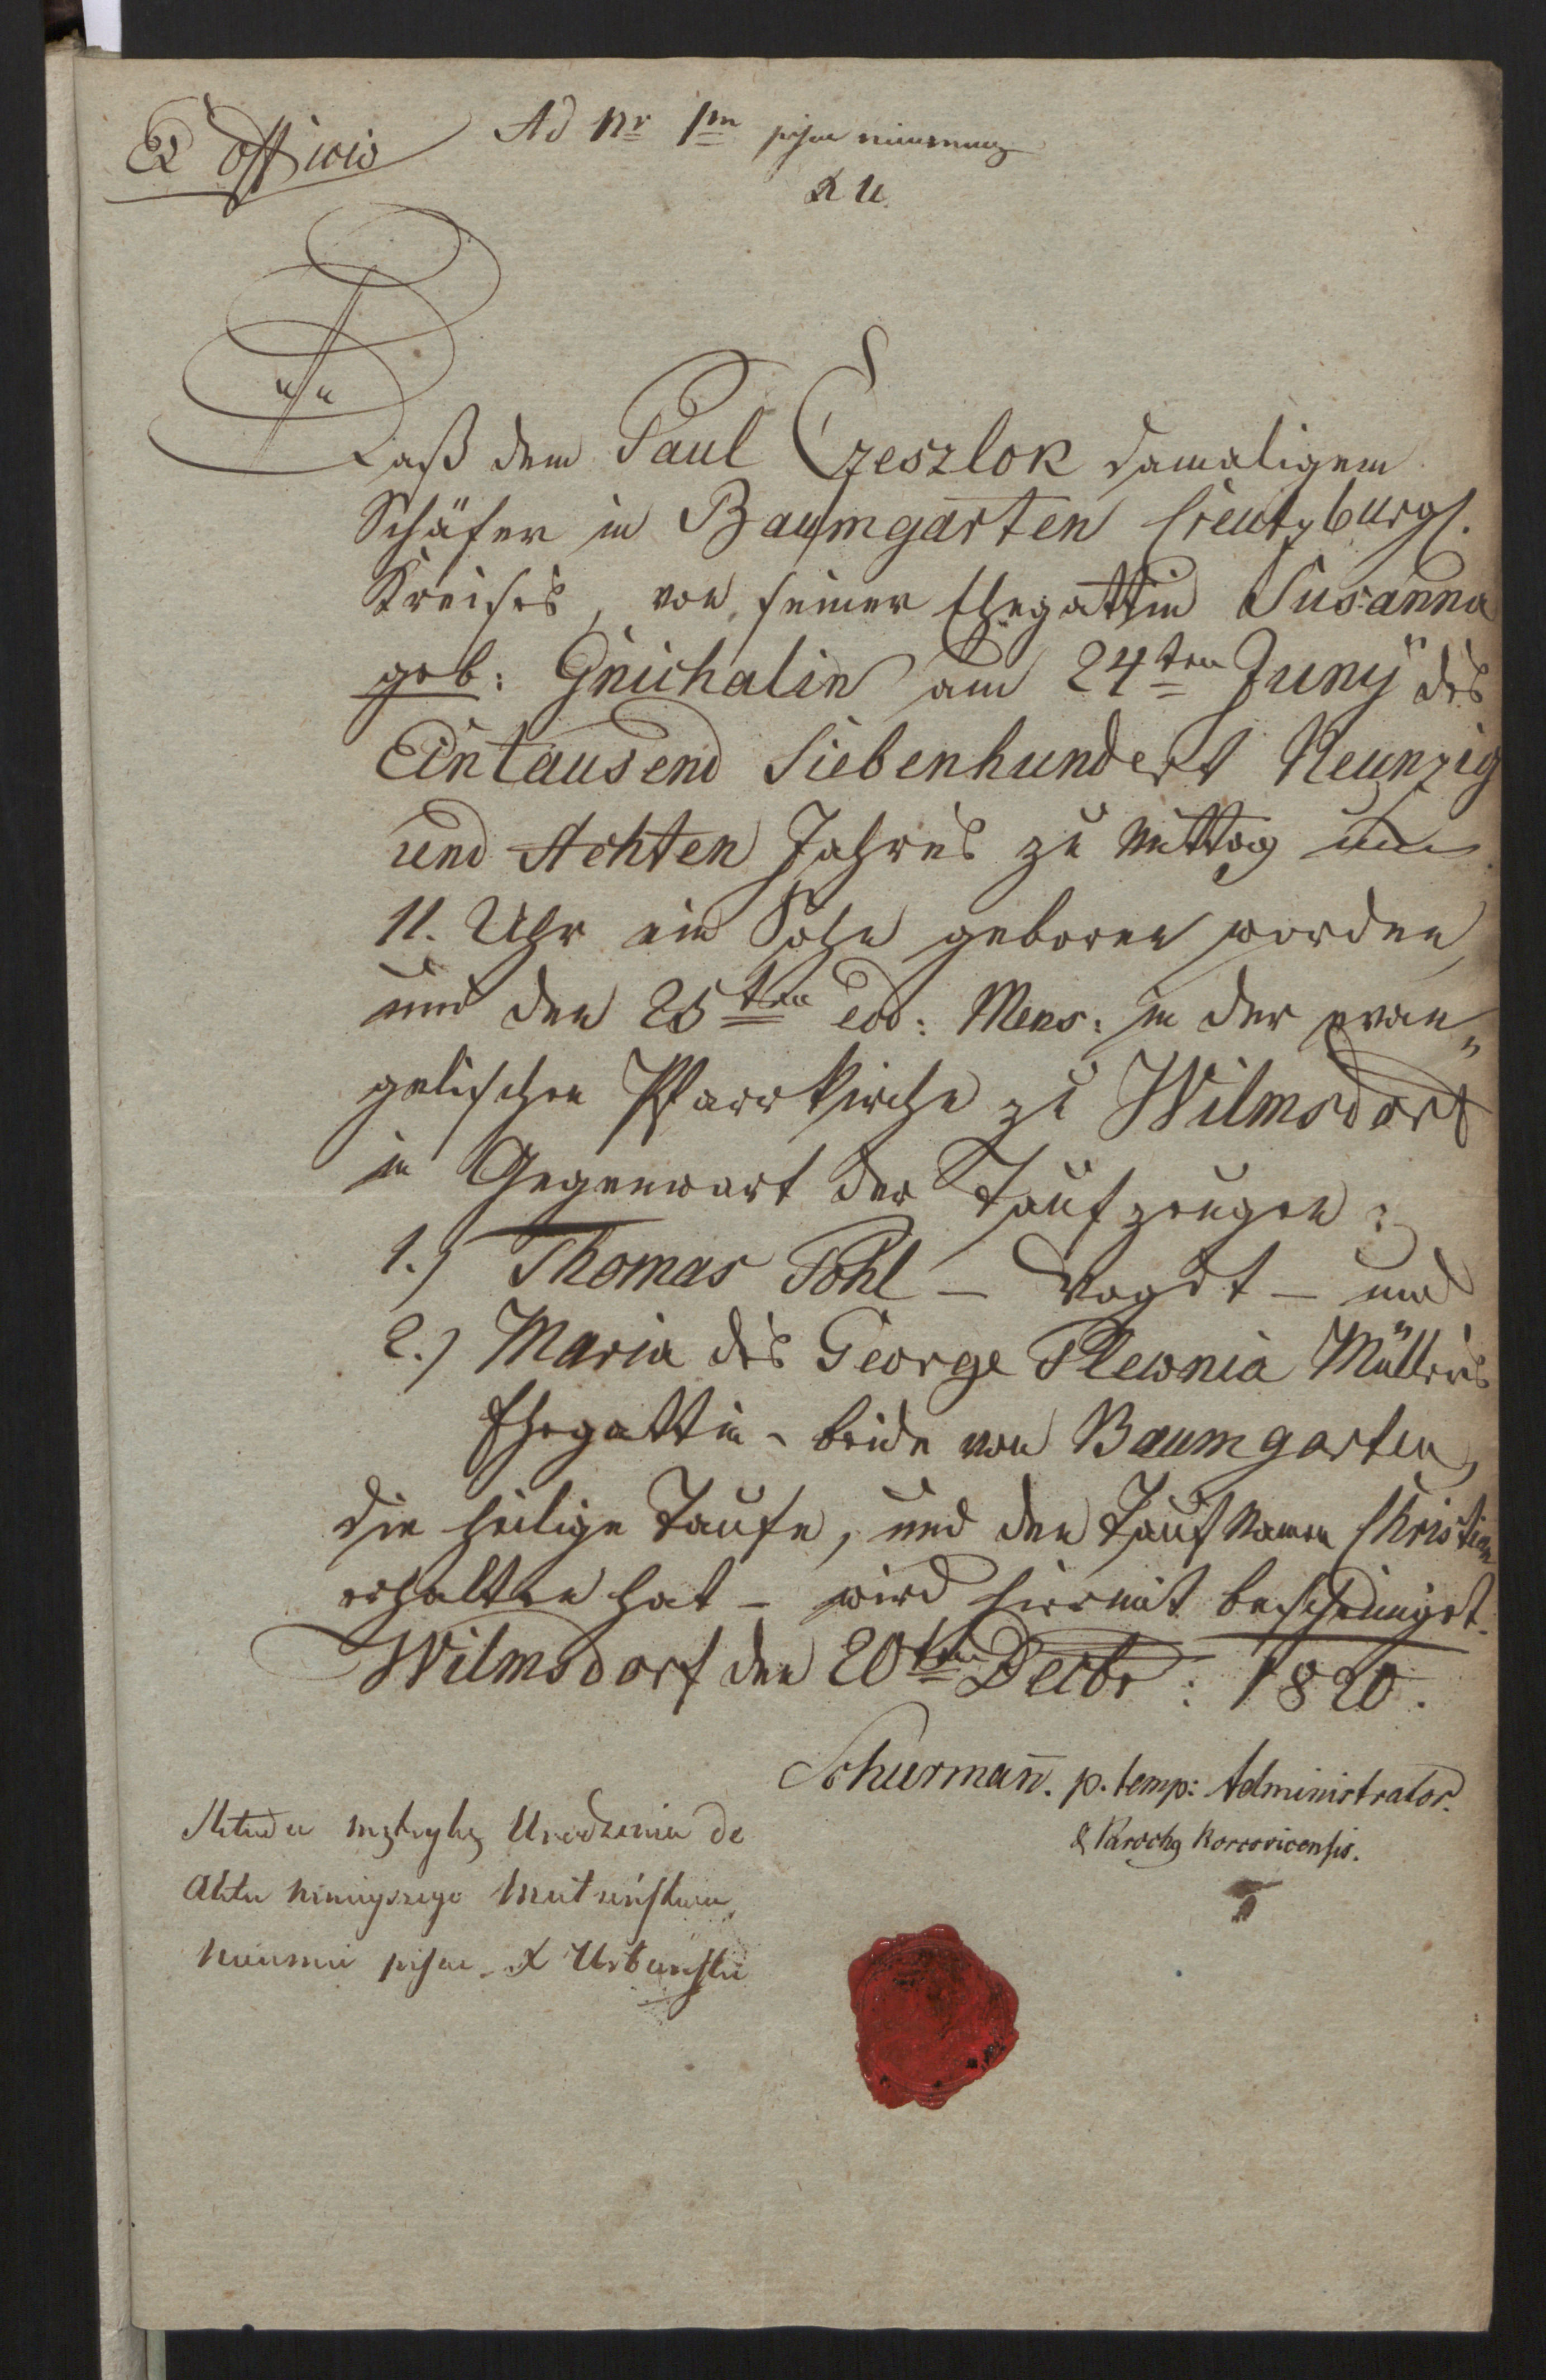 Odpis aktu chrztu Krystiana Cieślaka z alegat (20 DEC 1820)